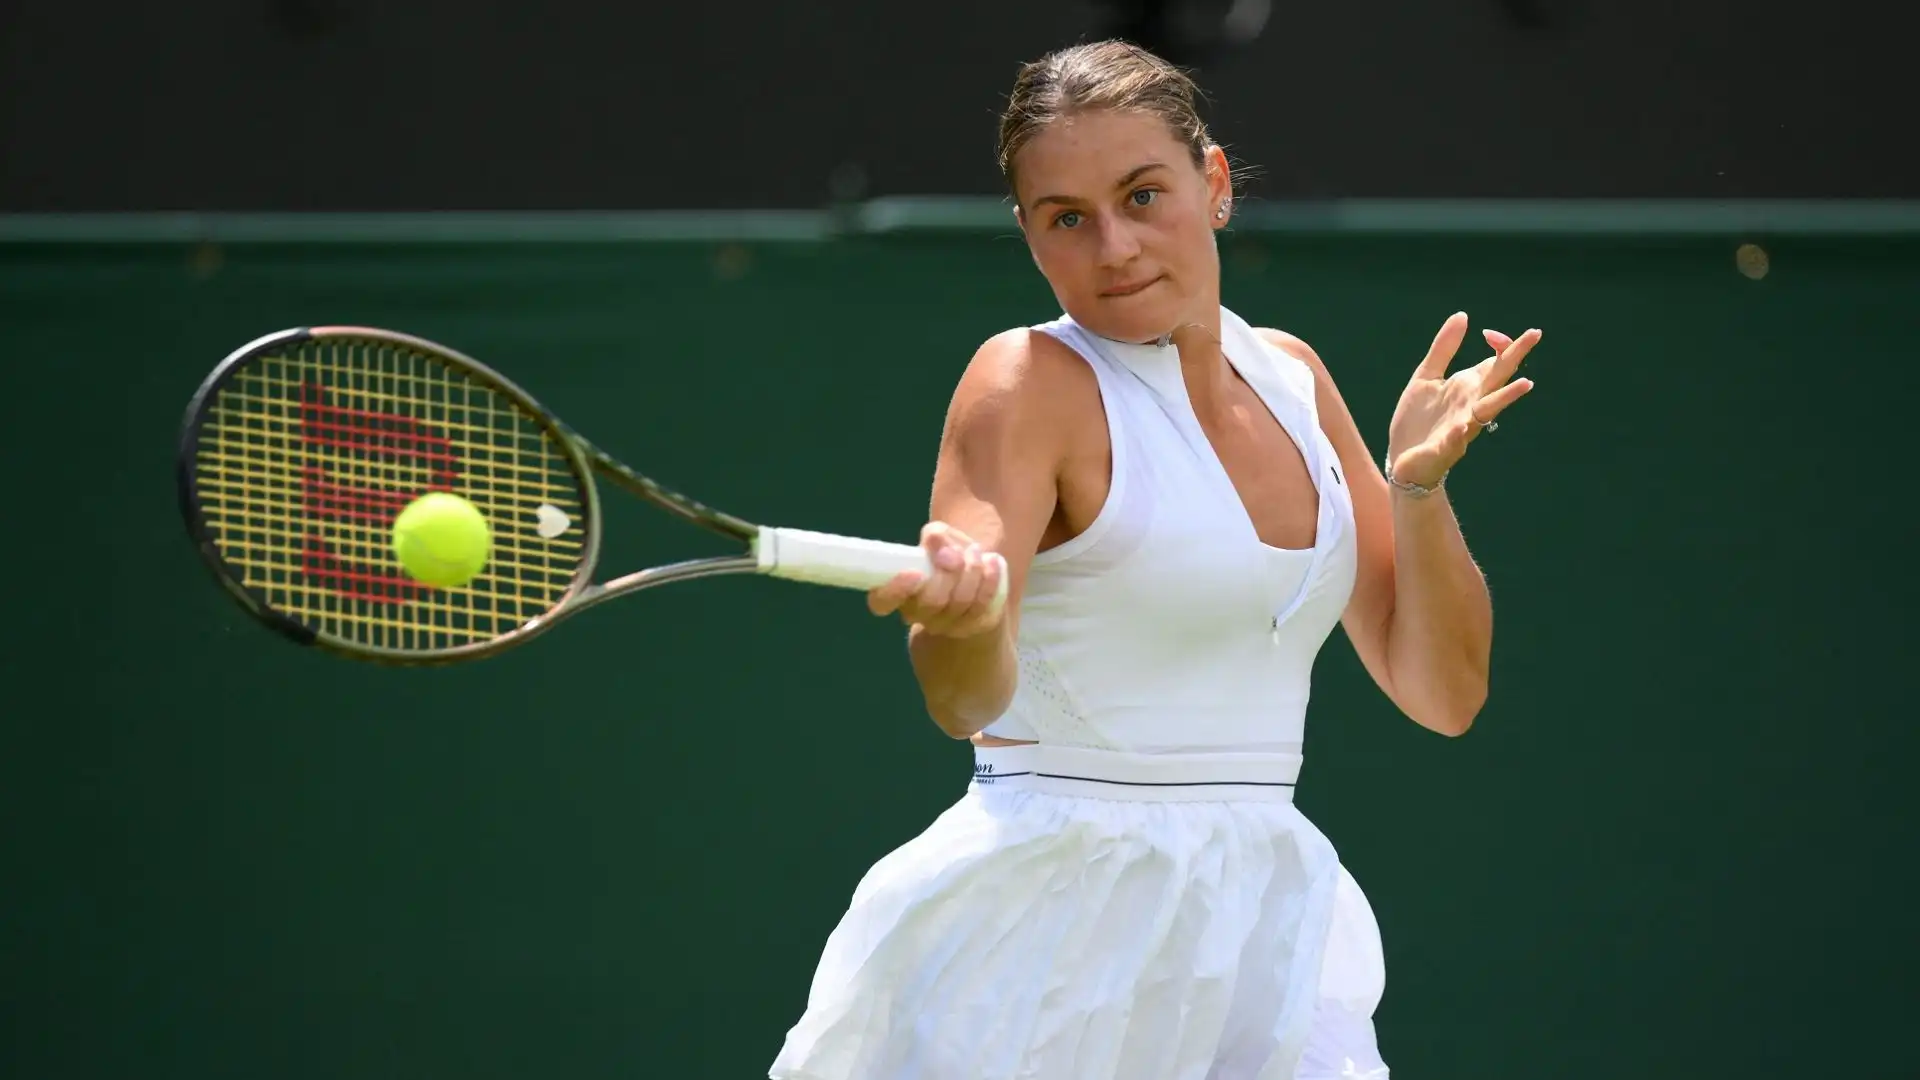 La tennista ucraina ha eliminato in tre set al termine di un match tiratissimo la greca Maria Sakkari